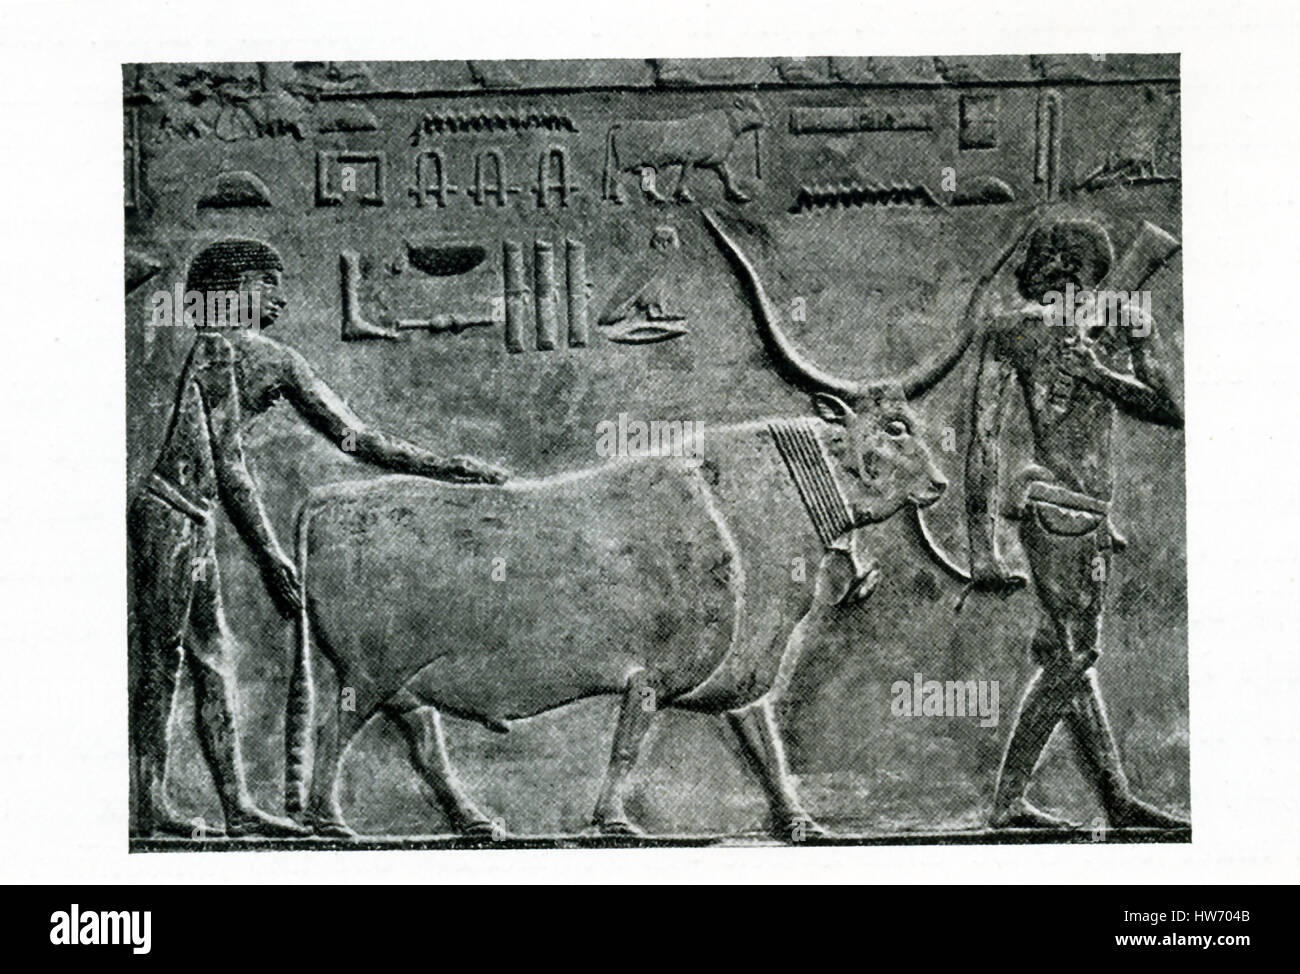 Ce relief sculpté montre un fermier réunissant dans un braquage. C'est à partir de l'ancien royaume tombe de la princesse Idut à Saqqara. Saqqara a servi comme un immense cimetière, dans l'Egypte ancienne et était le cimetière de l'ancienne capitale égyptienne de Memphis. Djoser's Pyramide est également ici. Idut (également connu sous le Seshsehset) est pensé pour être la fille de l'UNAS, un roi de la cinquième dynastie (ch. 2494-2345 avant J.-C.) l'image est crédité à la Belgique d'historien de l'art Jean Capart (1877-1947) et Emil Roemmler (mort en 1941). Banque D'Images